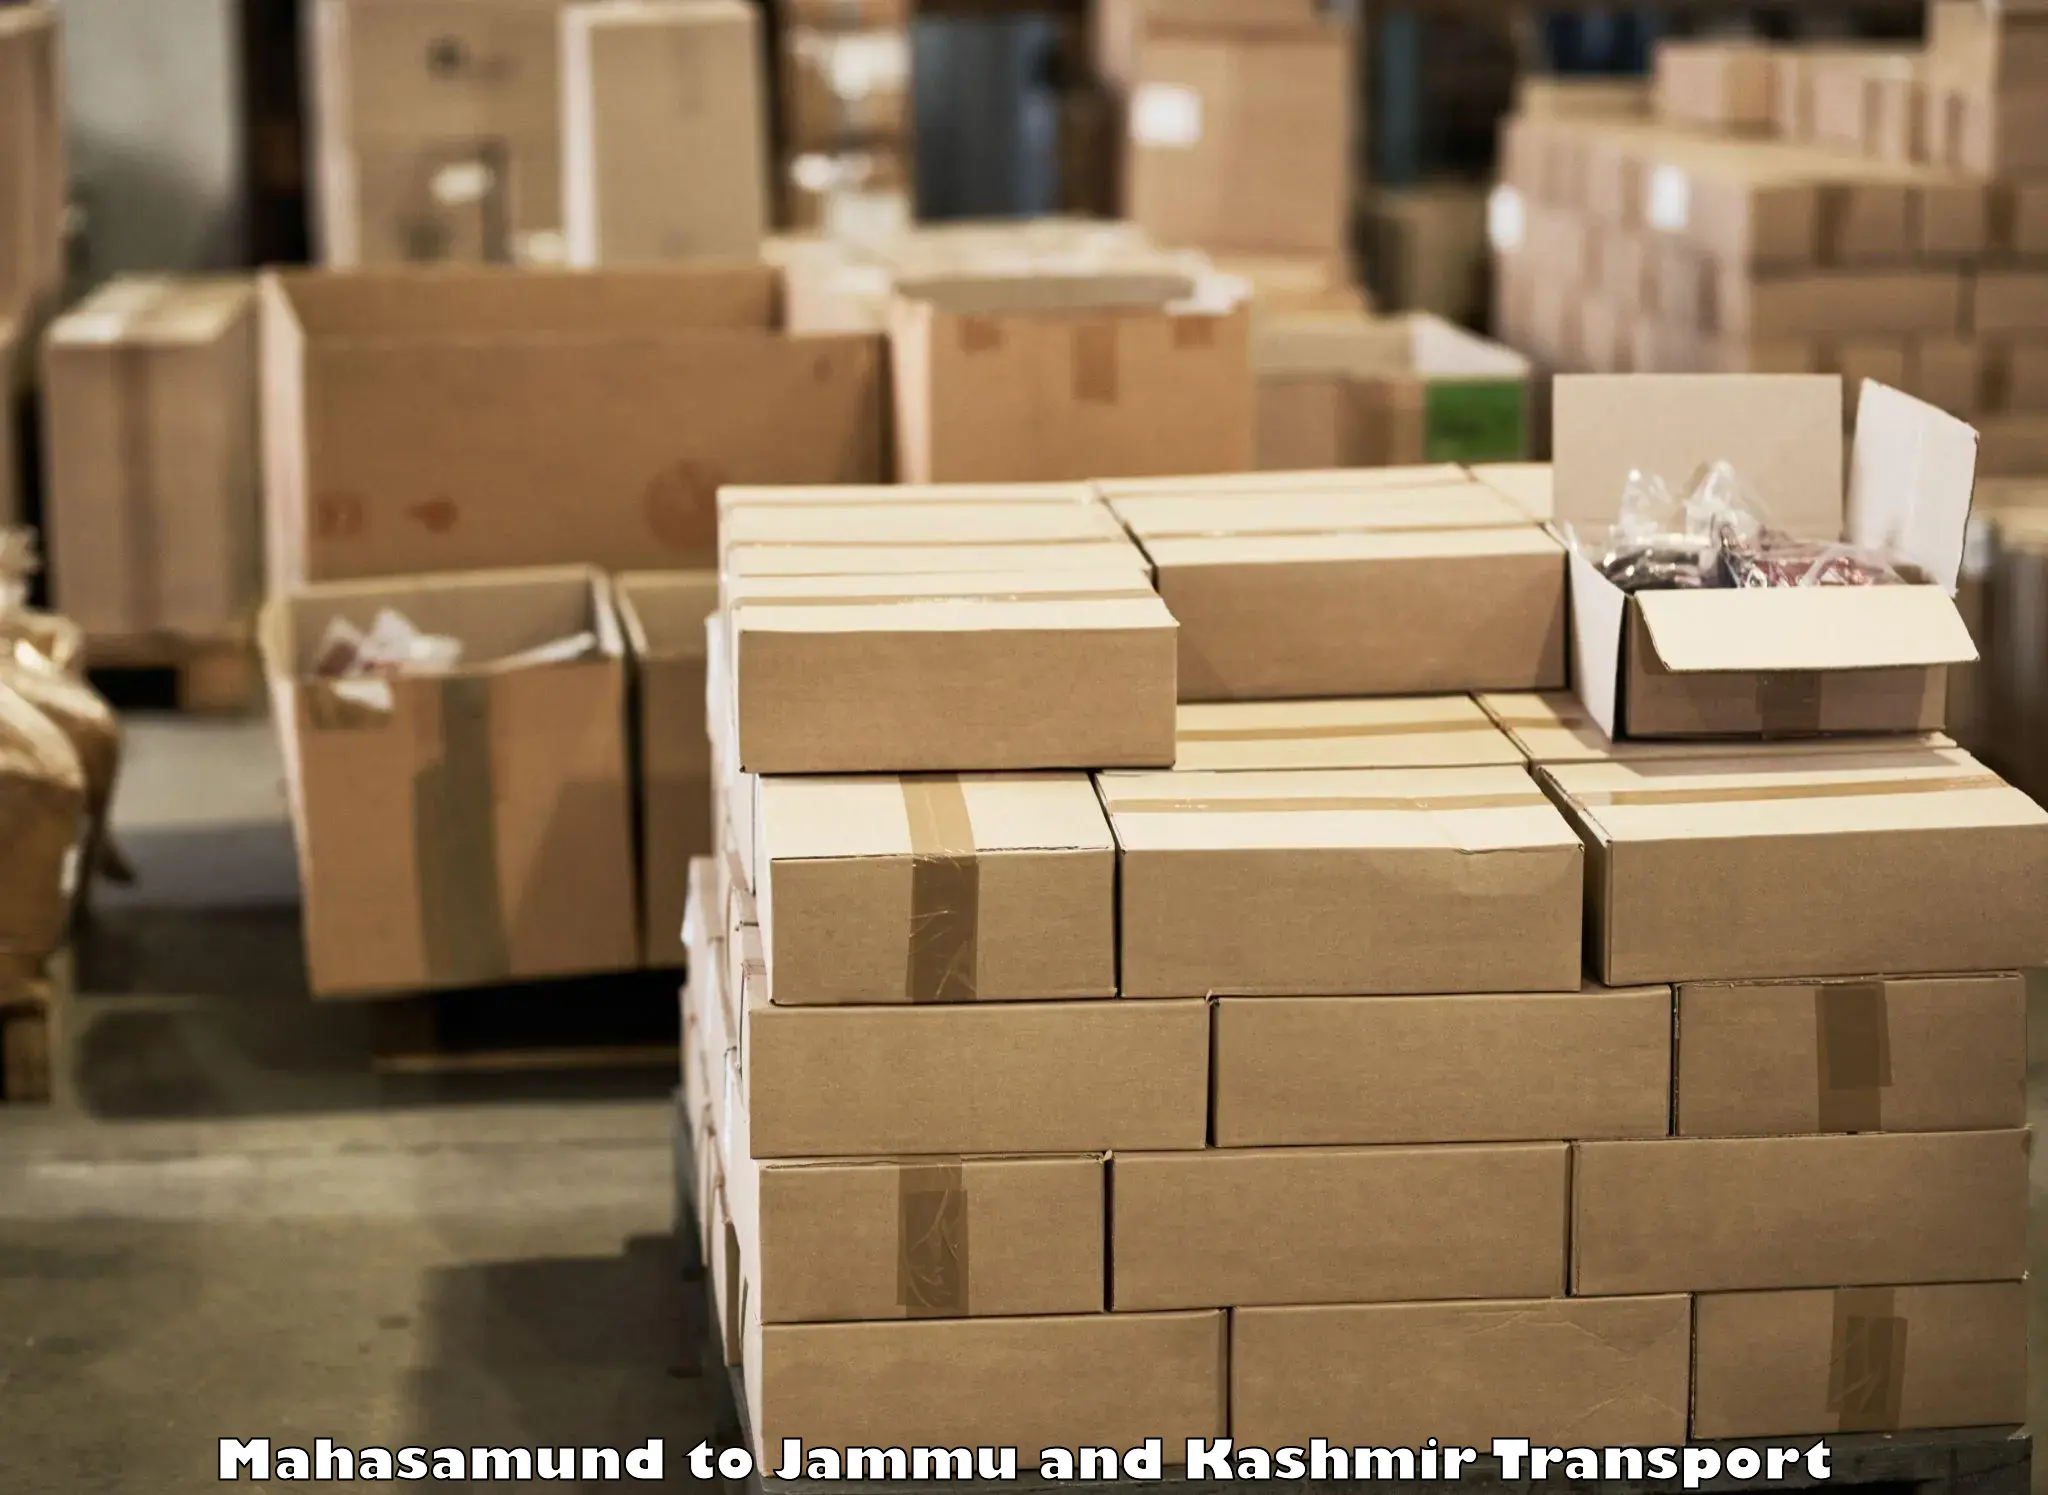 Shipping partner Mahasamund to Anantnag